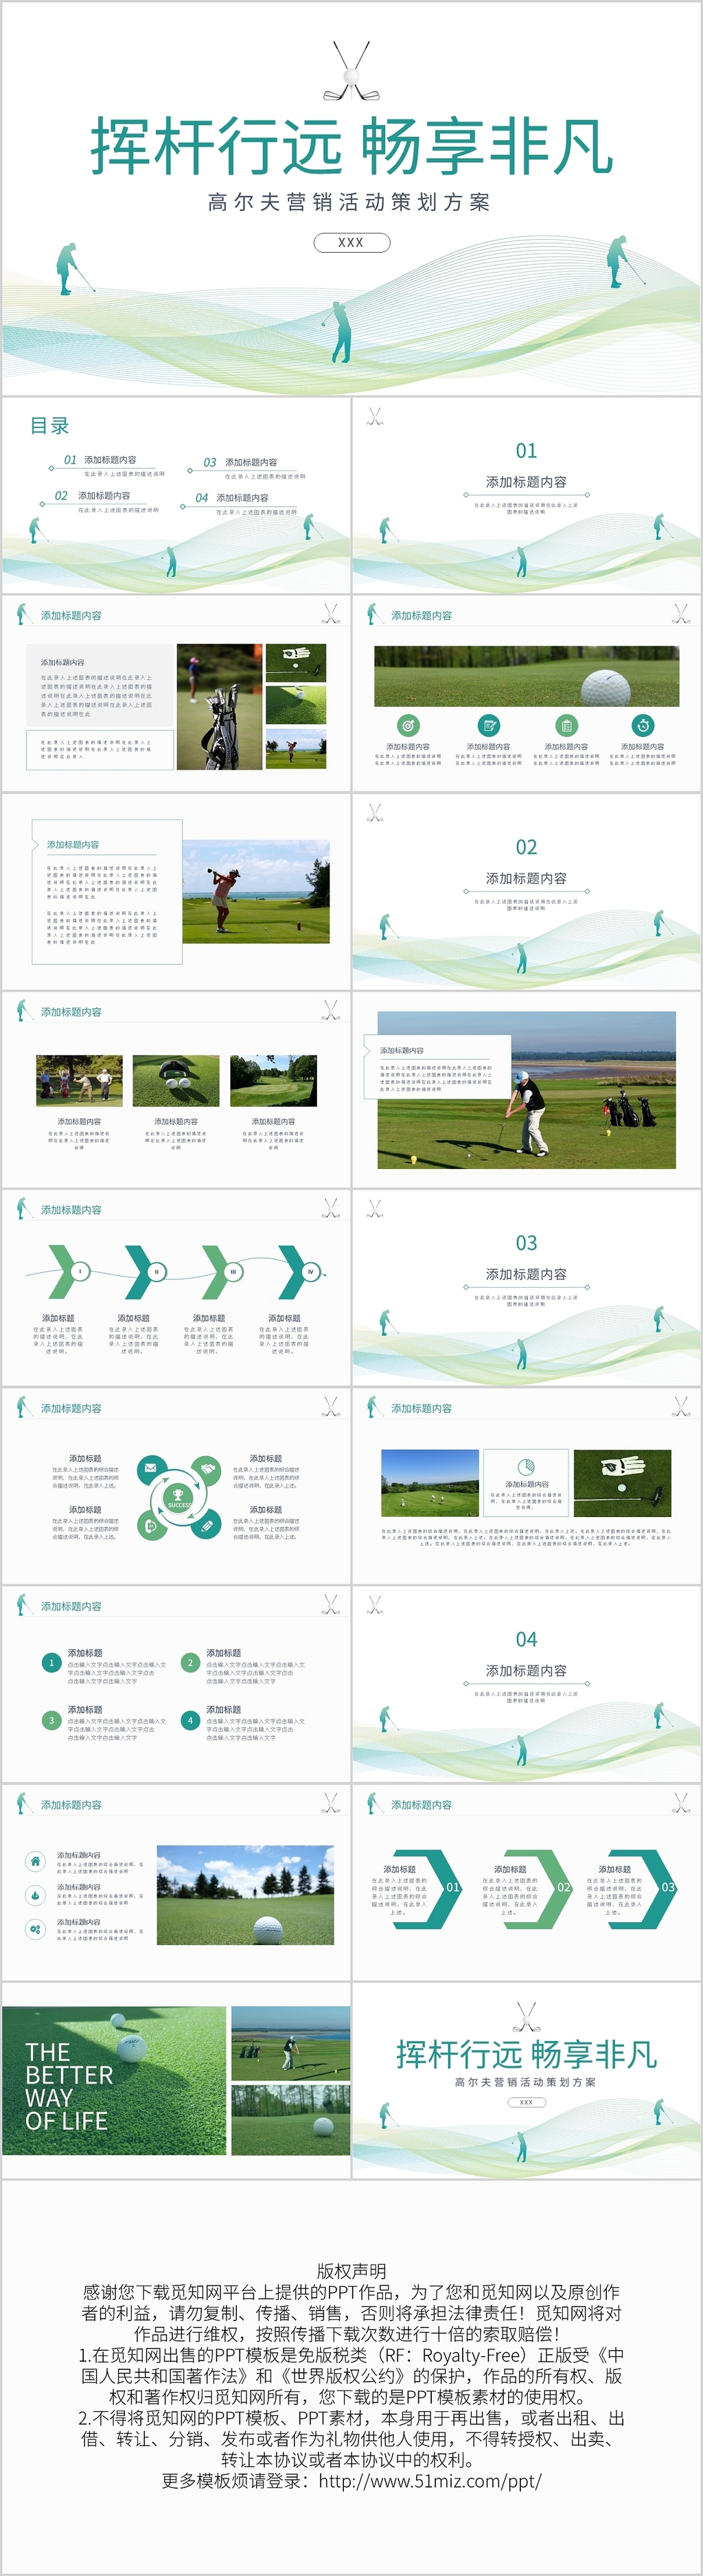 绿色高尔夫体育活动策划方案PPT模板宣传PPT动态PPT